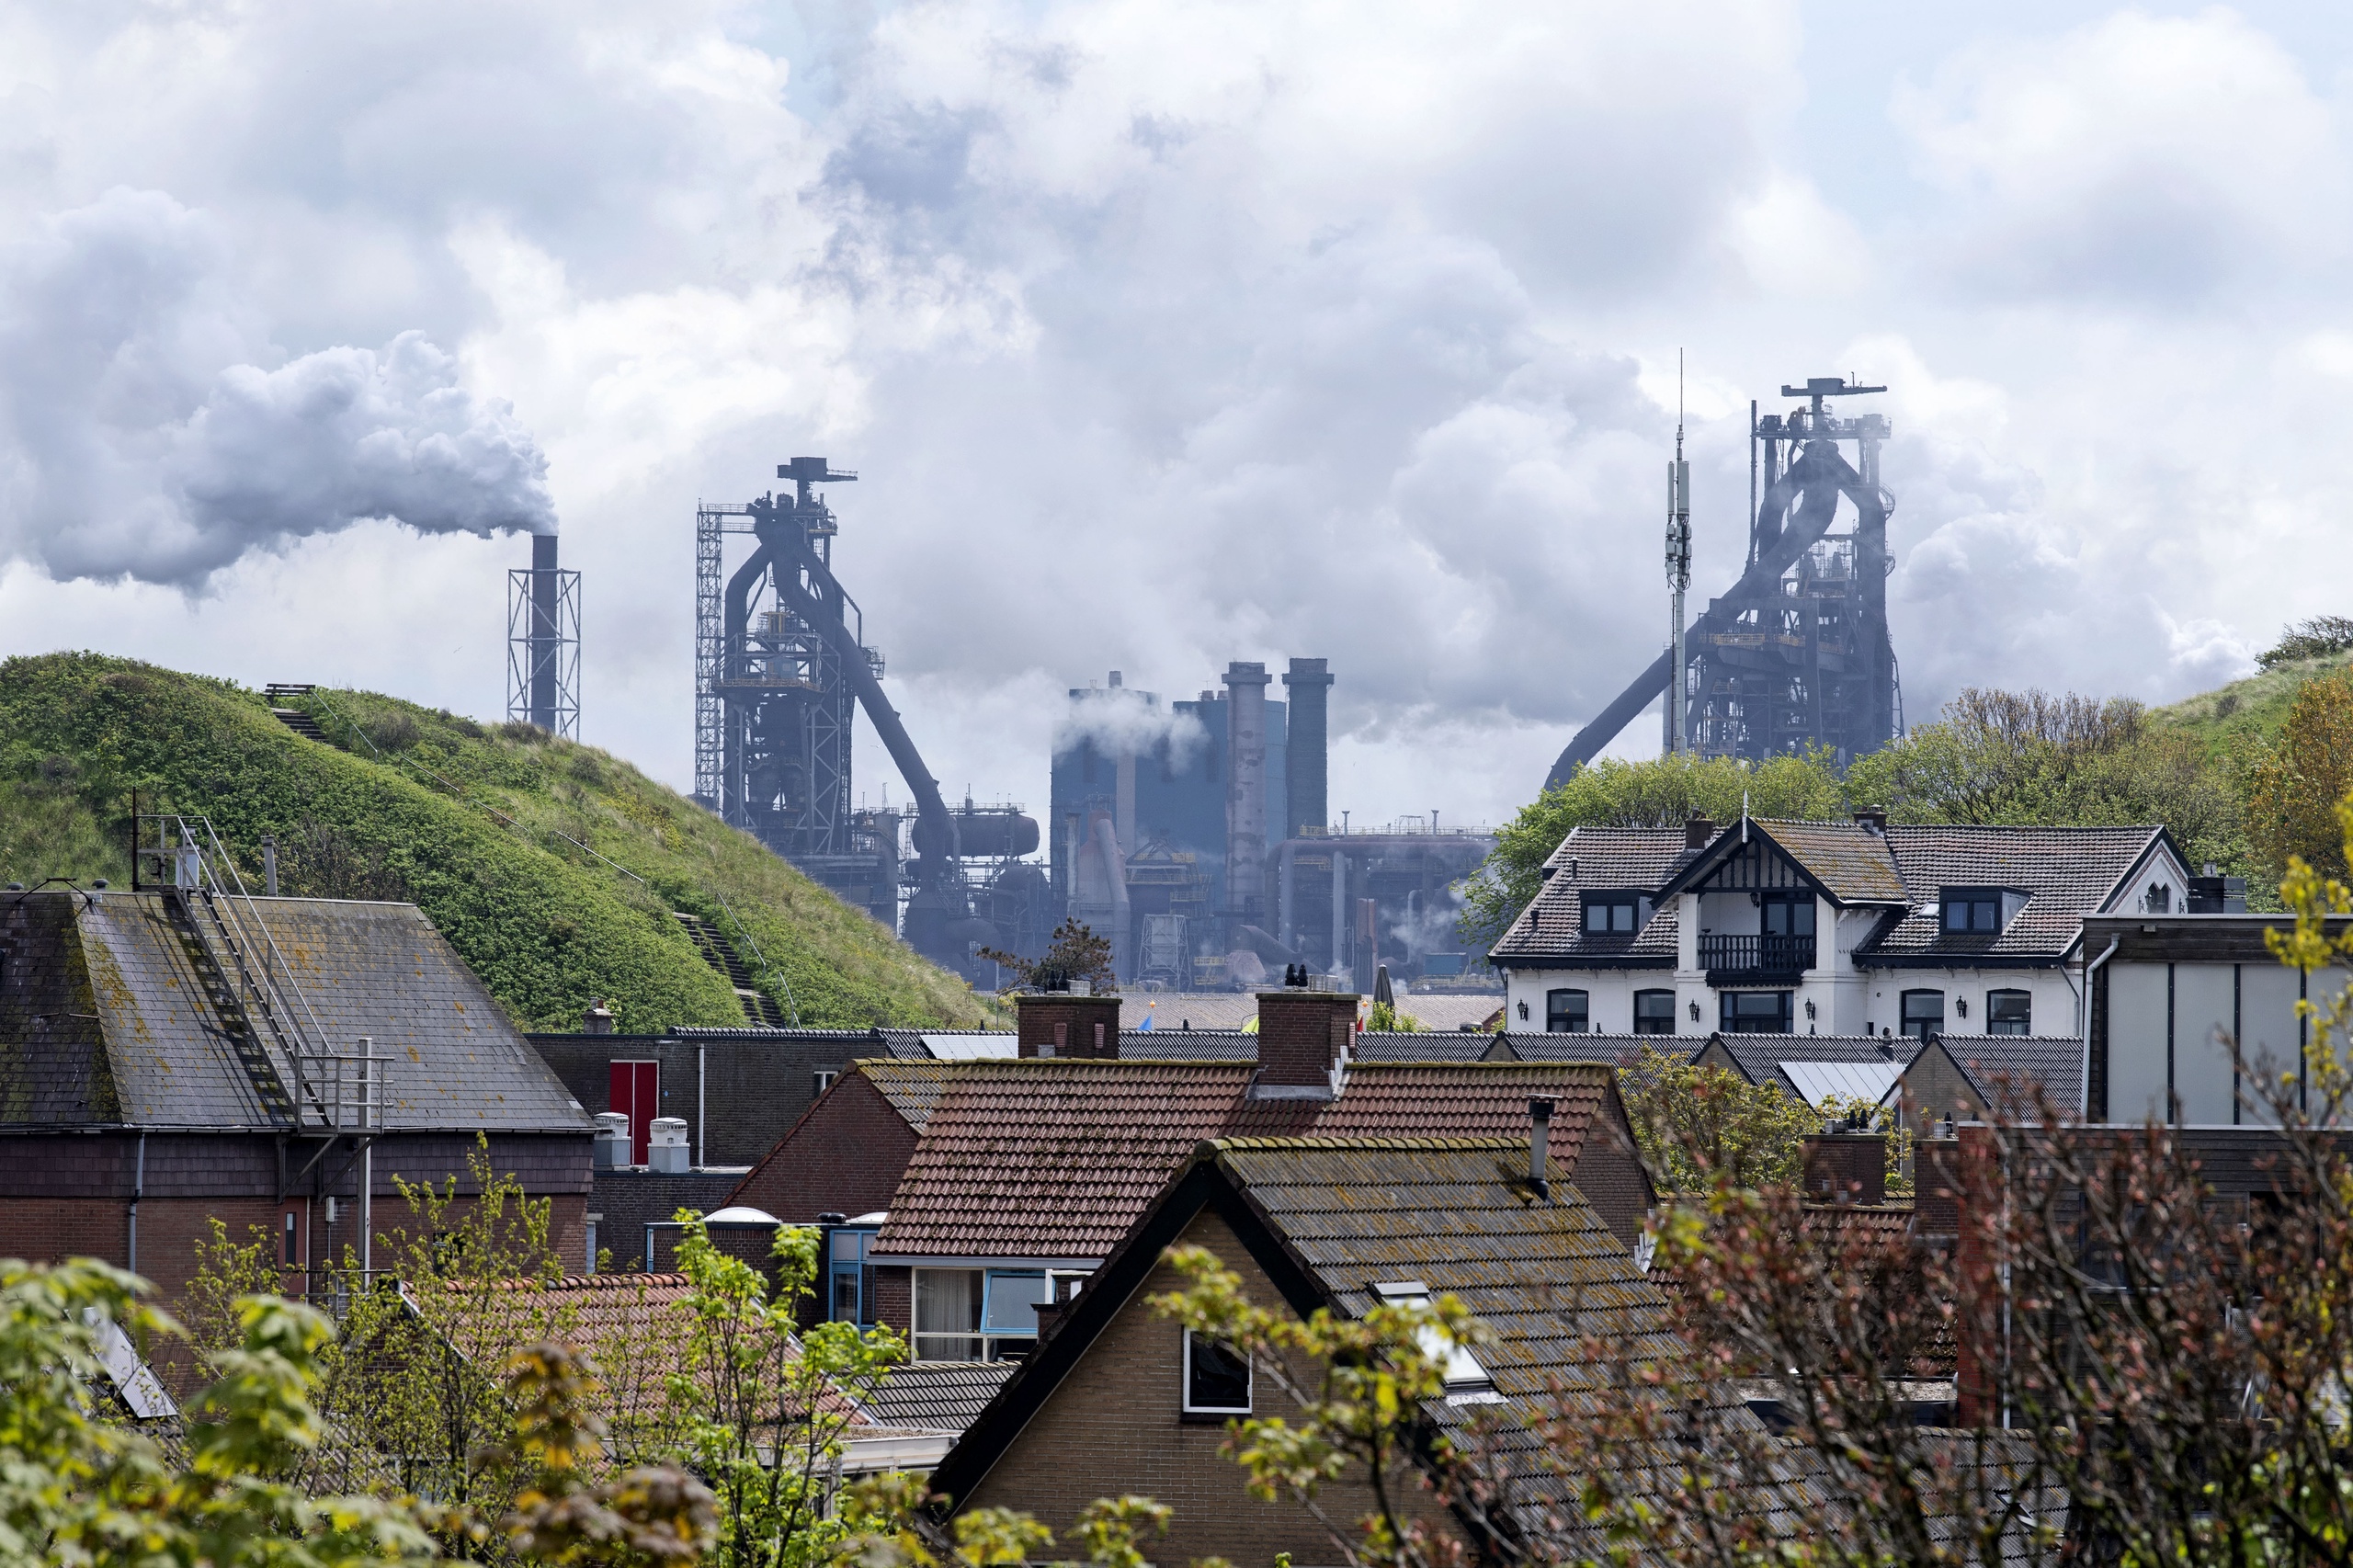 Staalproducent Tata Steel in Wijk aan Zee.